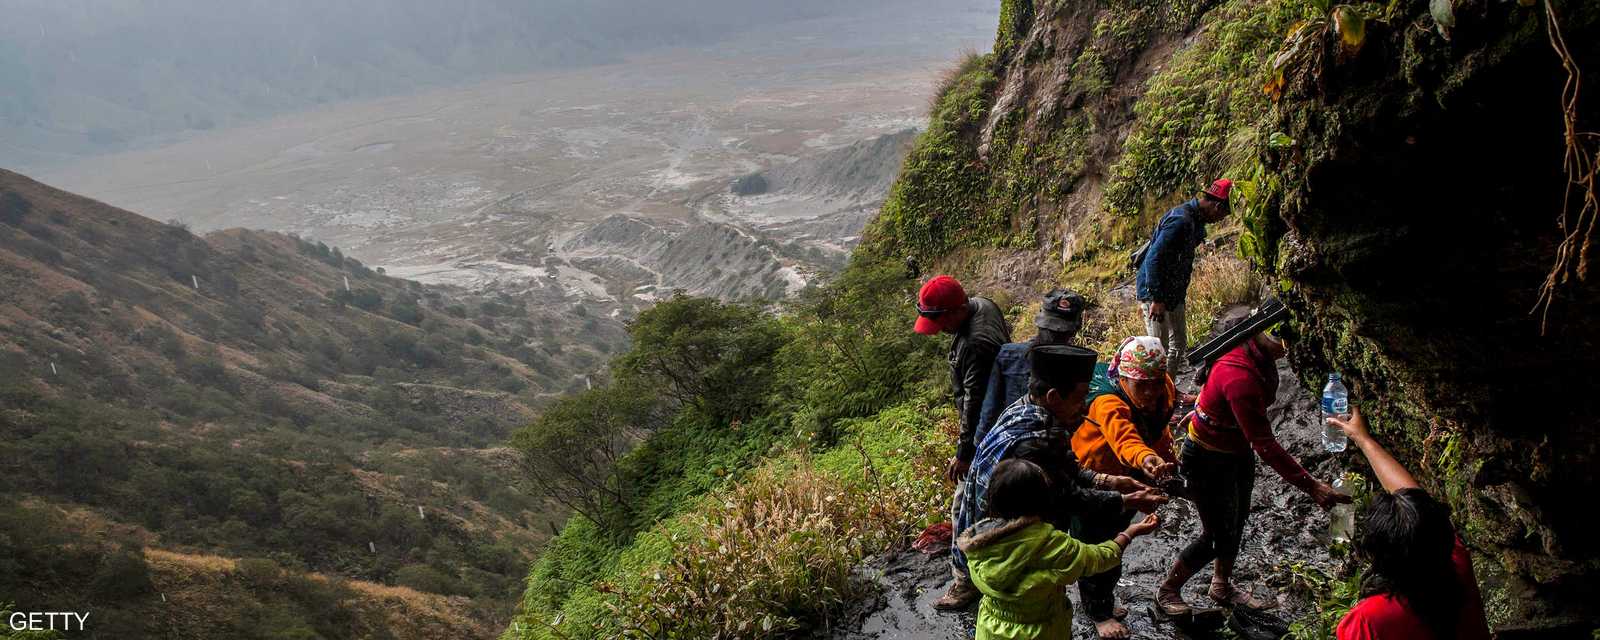 رحلة شاقة إلى بركان كالديرا في جبل برومو لإلقاء (الأضحية) 